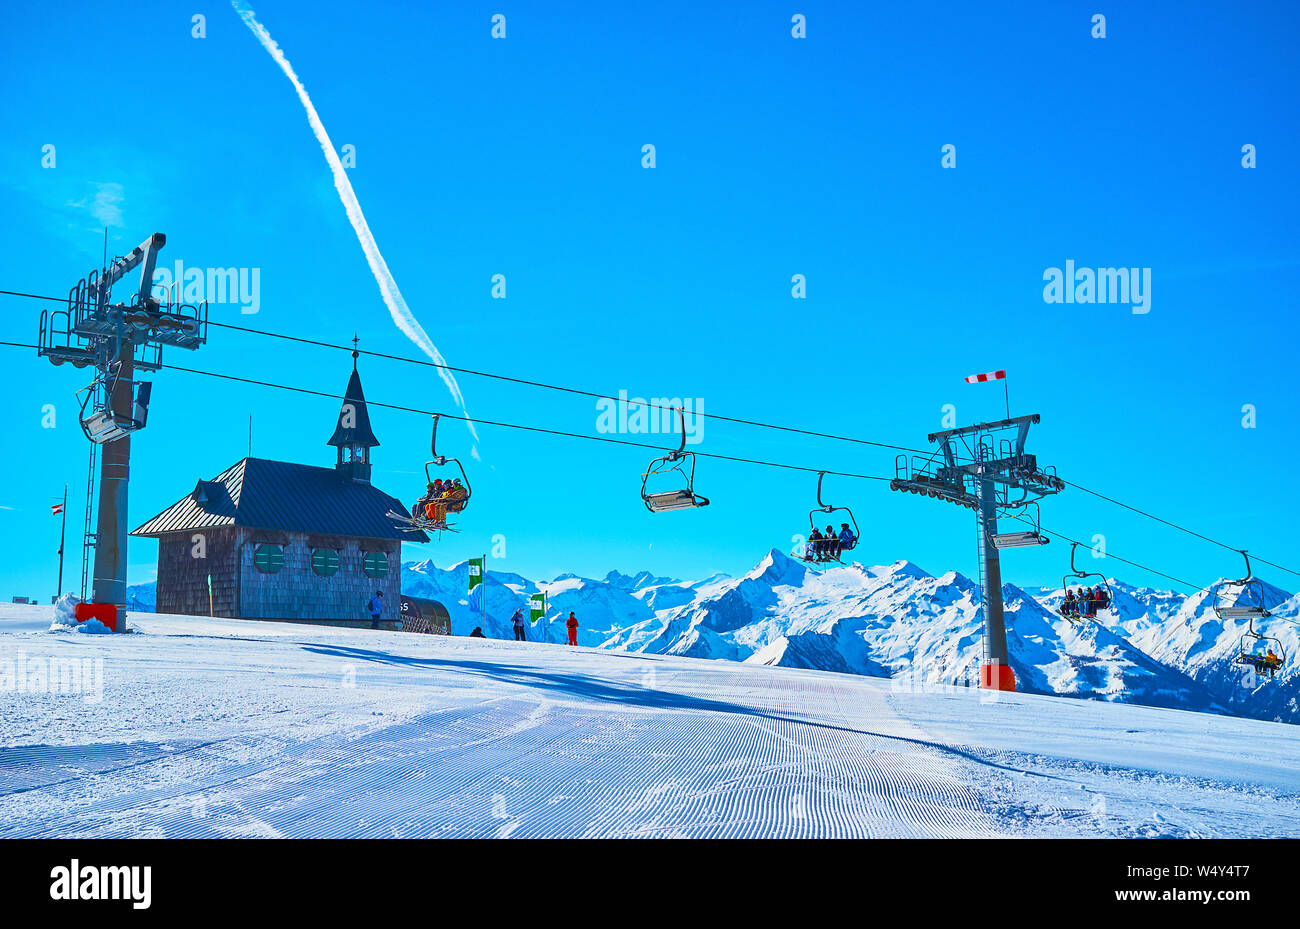 ZELL AM SEE, Autriche - 28 février 2019 : Profitez d'un paysage hivernal de Schmitten mount avec corduroy pistes de ski run, équitation, télésiège, Elisabeth chapelle Banque D'Images